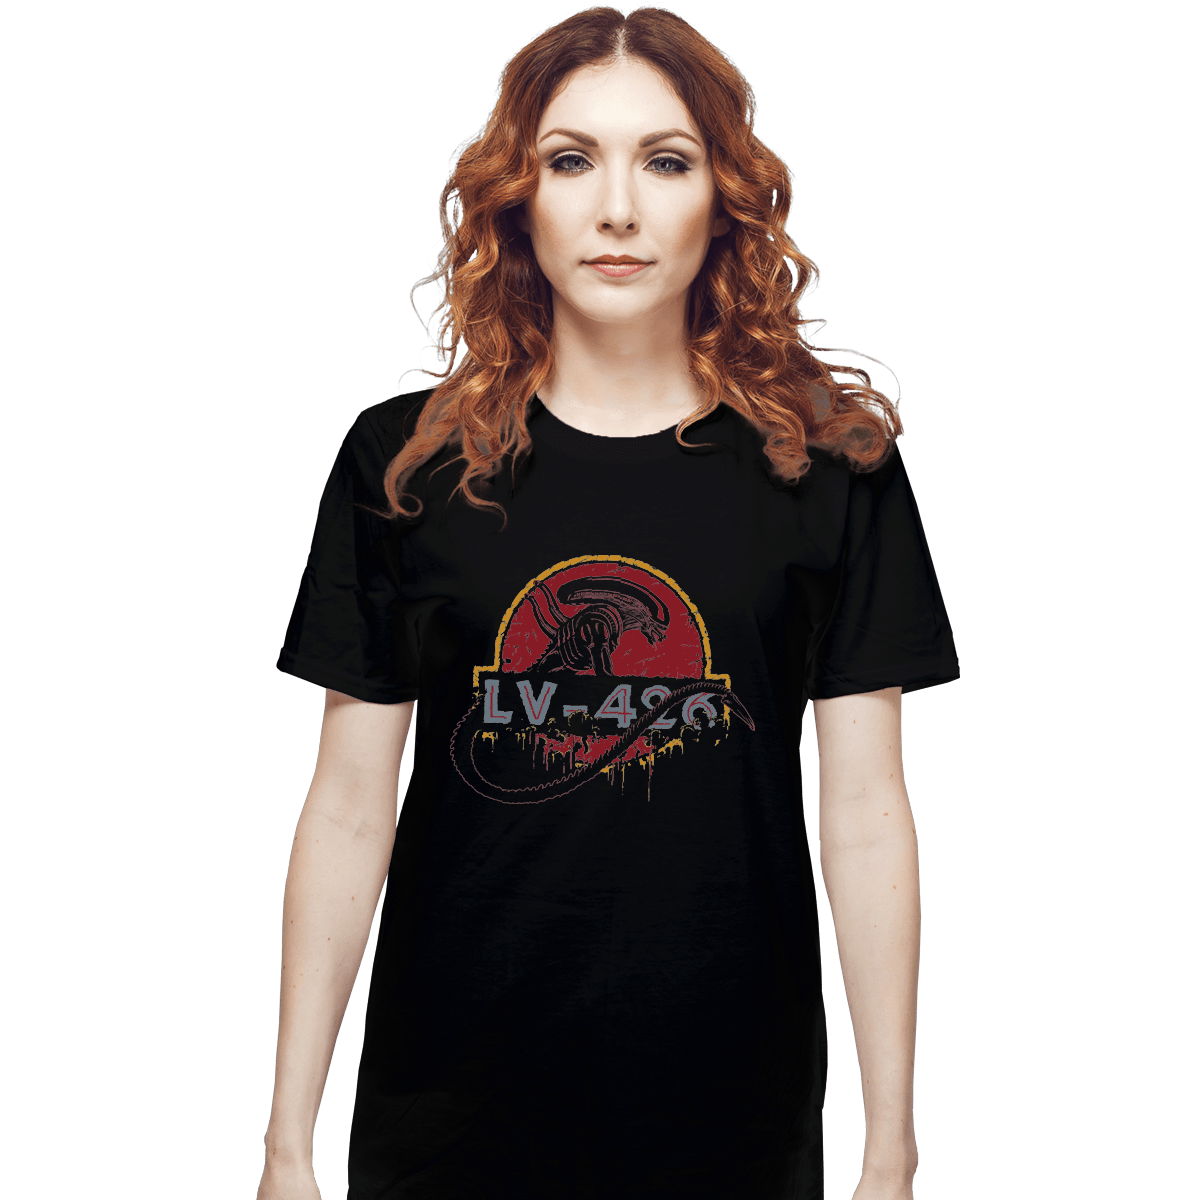 Buy Rosie on LV-426 T-Shirt